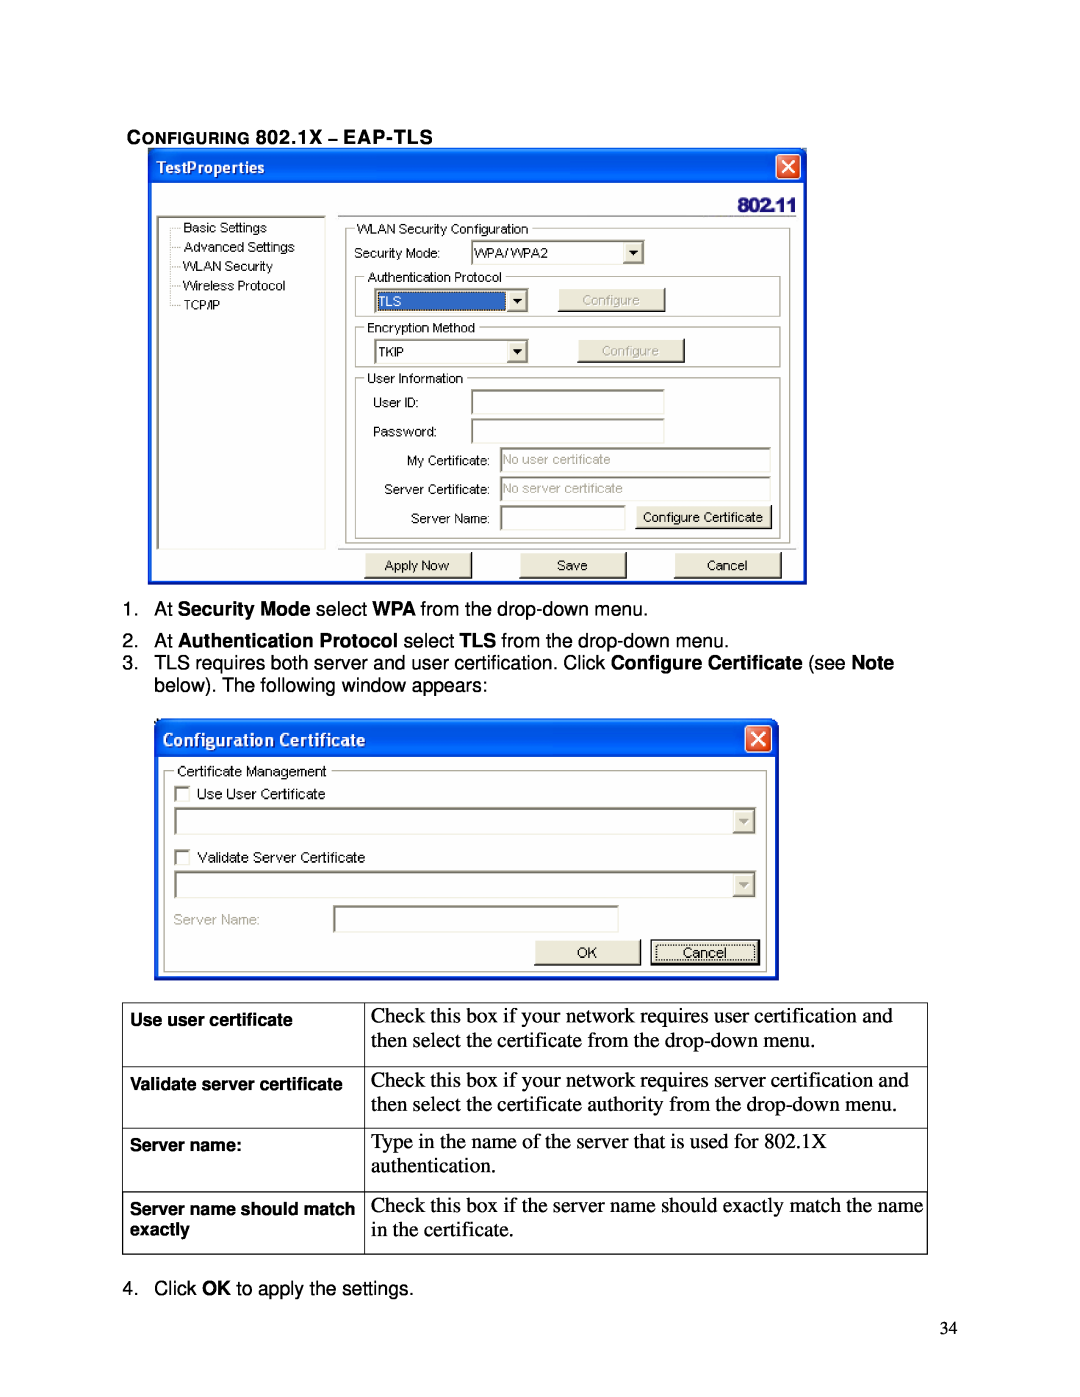 TRENDnet TEW-603PI manual CONFIGURING 802.1X - EAP-TLS 